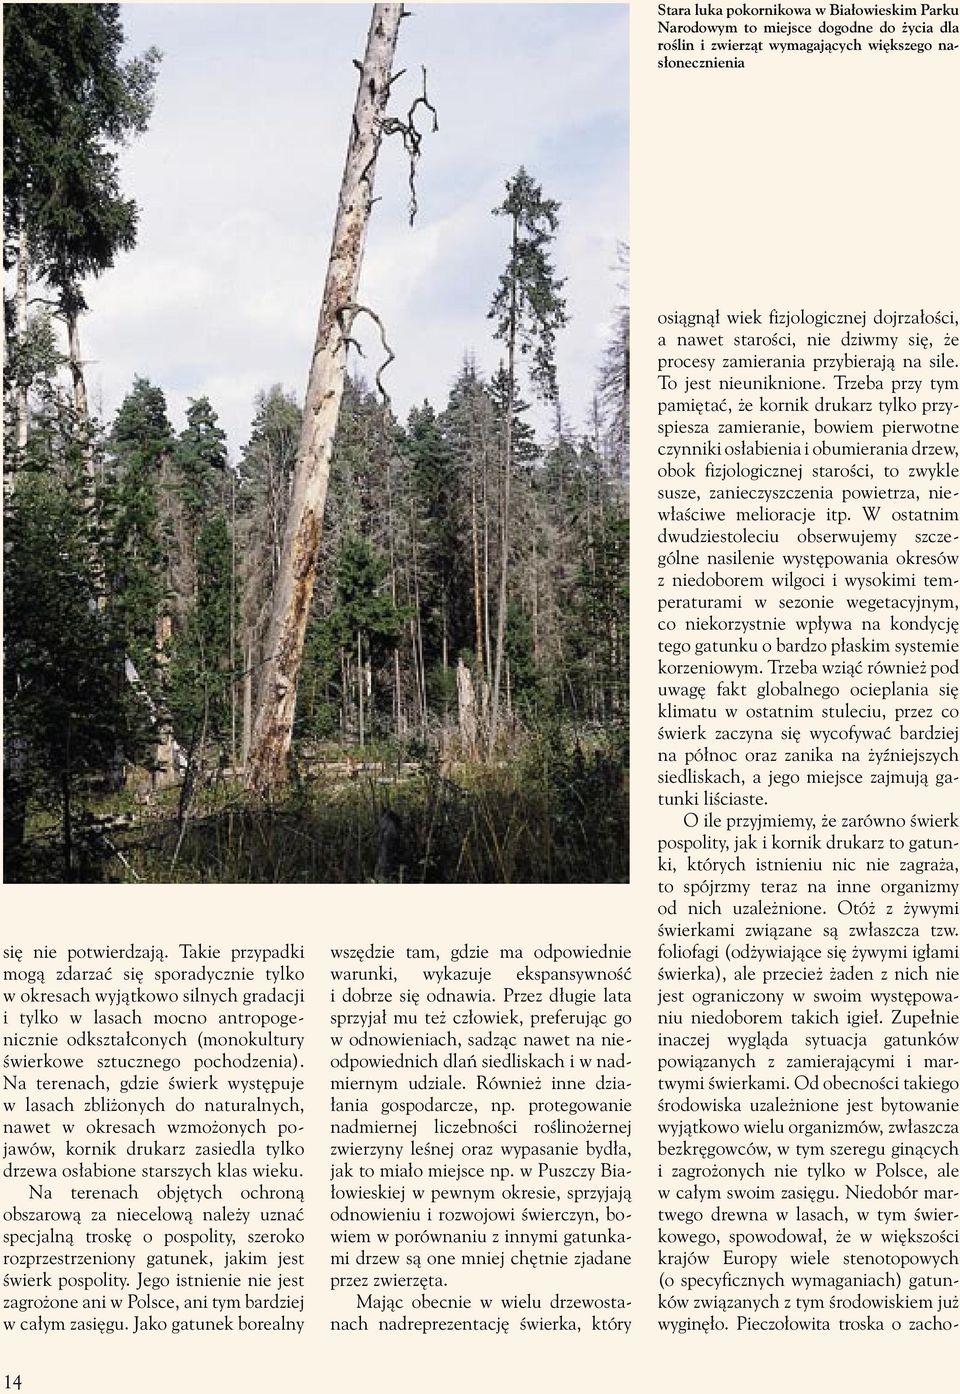 Na terenach, gdzie świerk występuje w lasach zbliżonych do naturalnych, nawet w okresach wzmożonych pojawów, kornik drukarz zasiedla tylko drzewa osłabione starszych klas wieku.